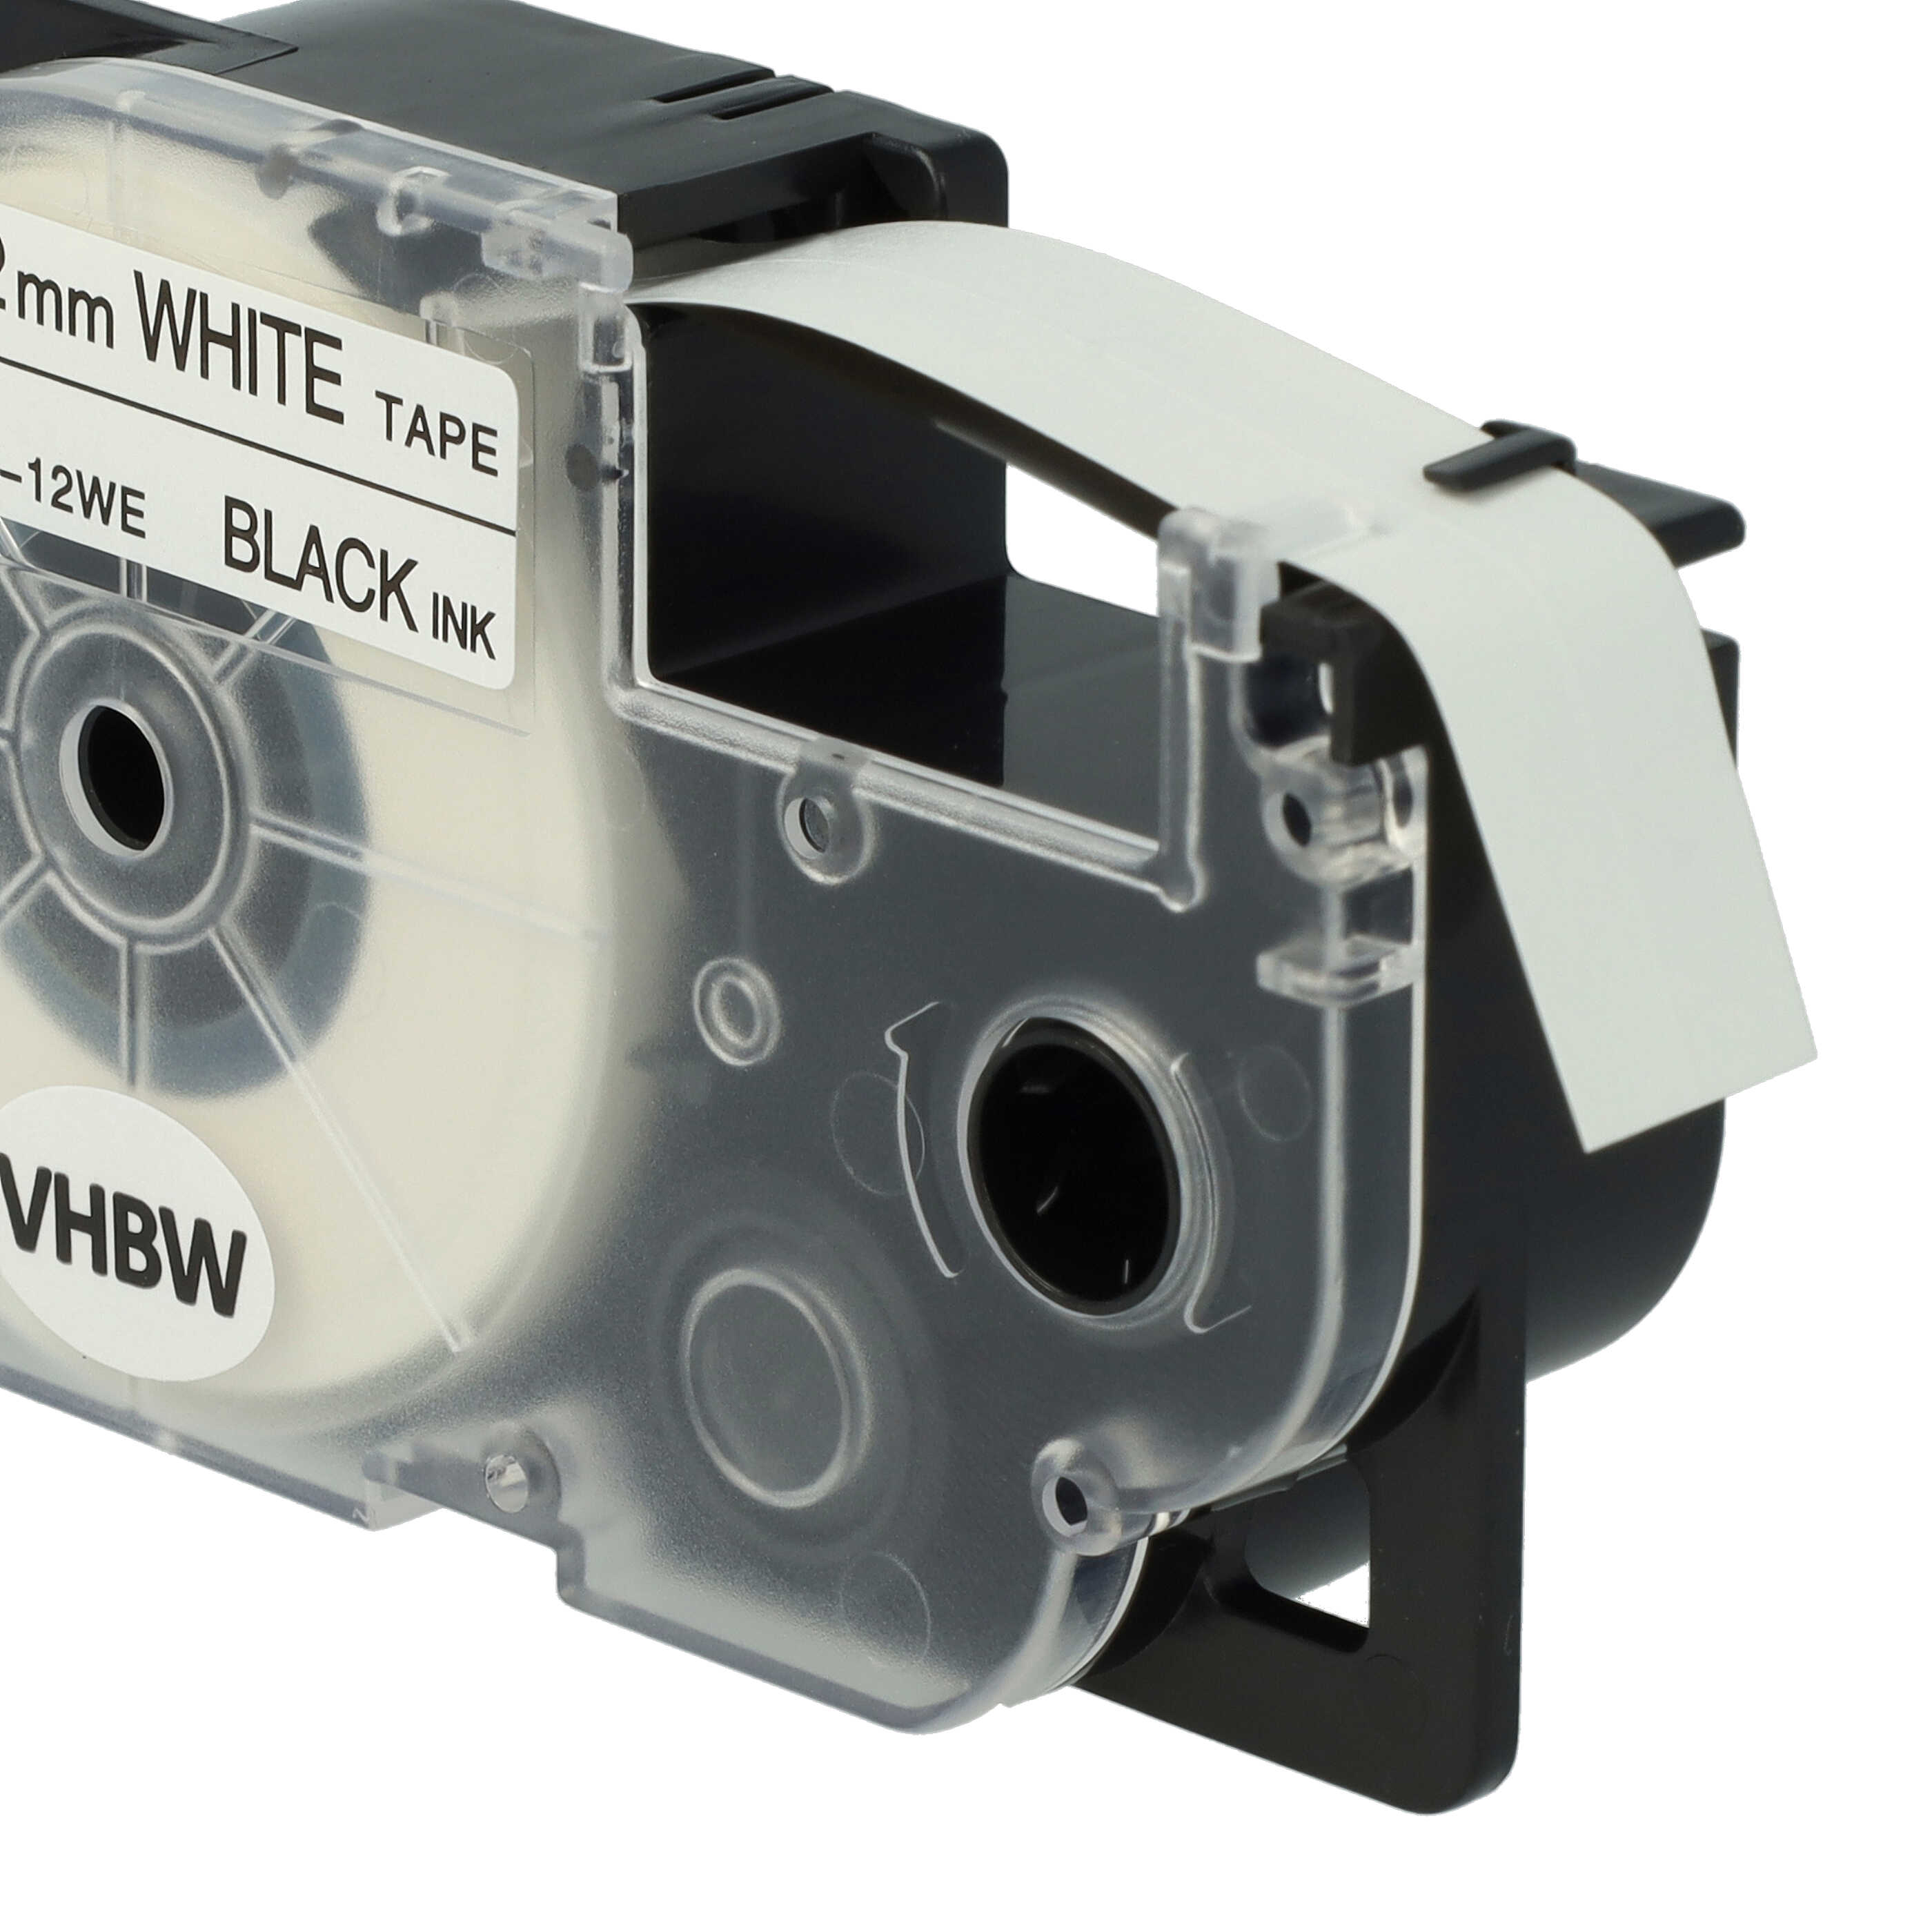 3x Cassettes à ruban remplacent Casio XR-12WE, XR-12WE1 - 12mm lettrage Noir ruban Blanc